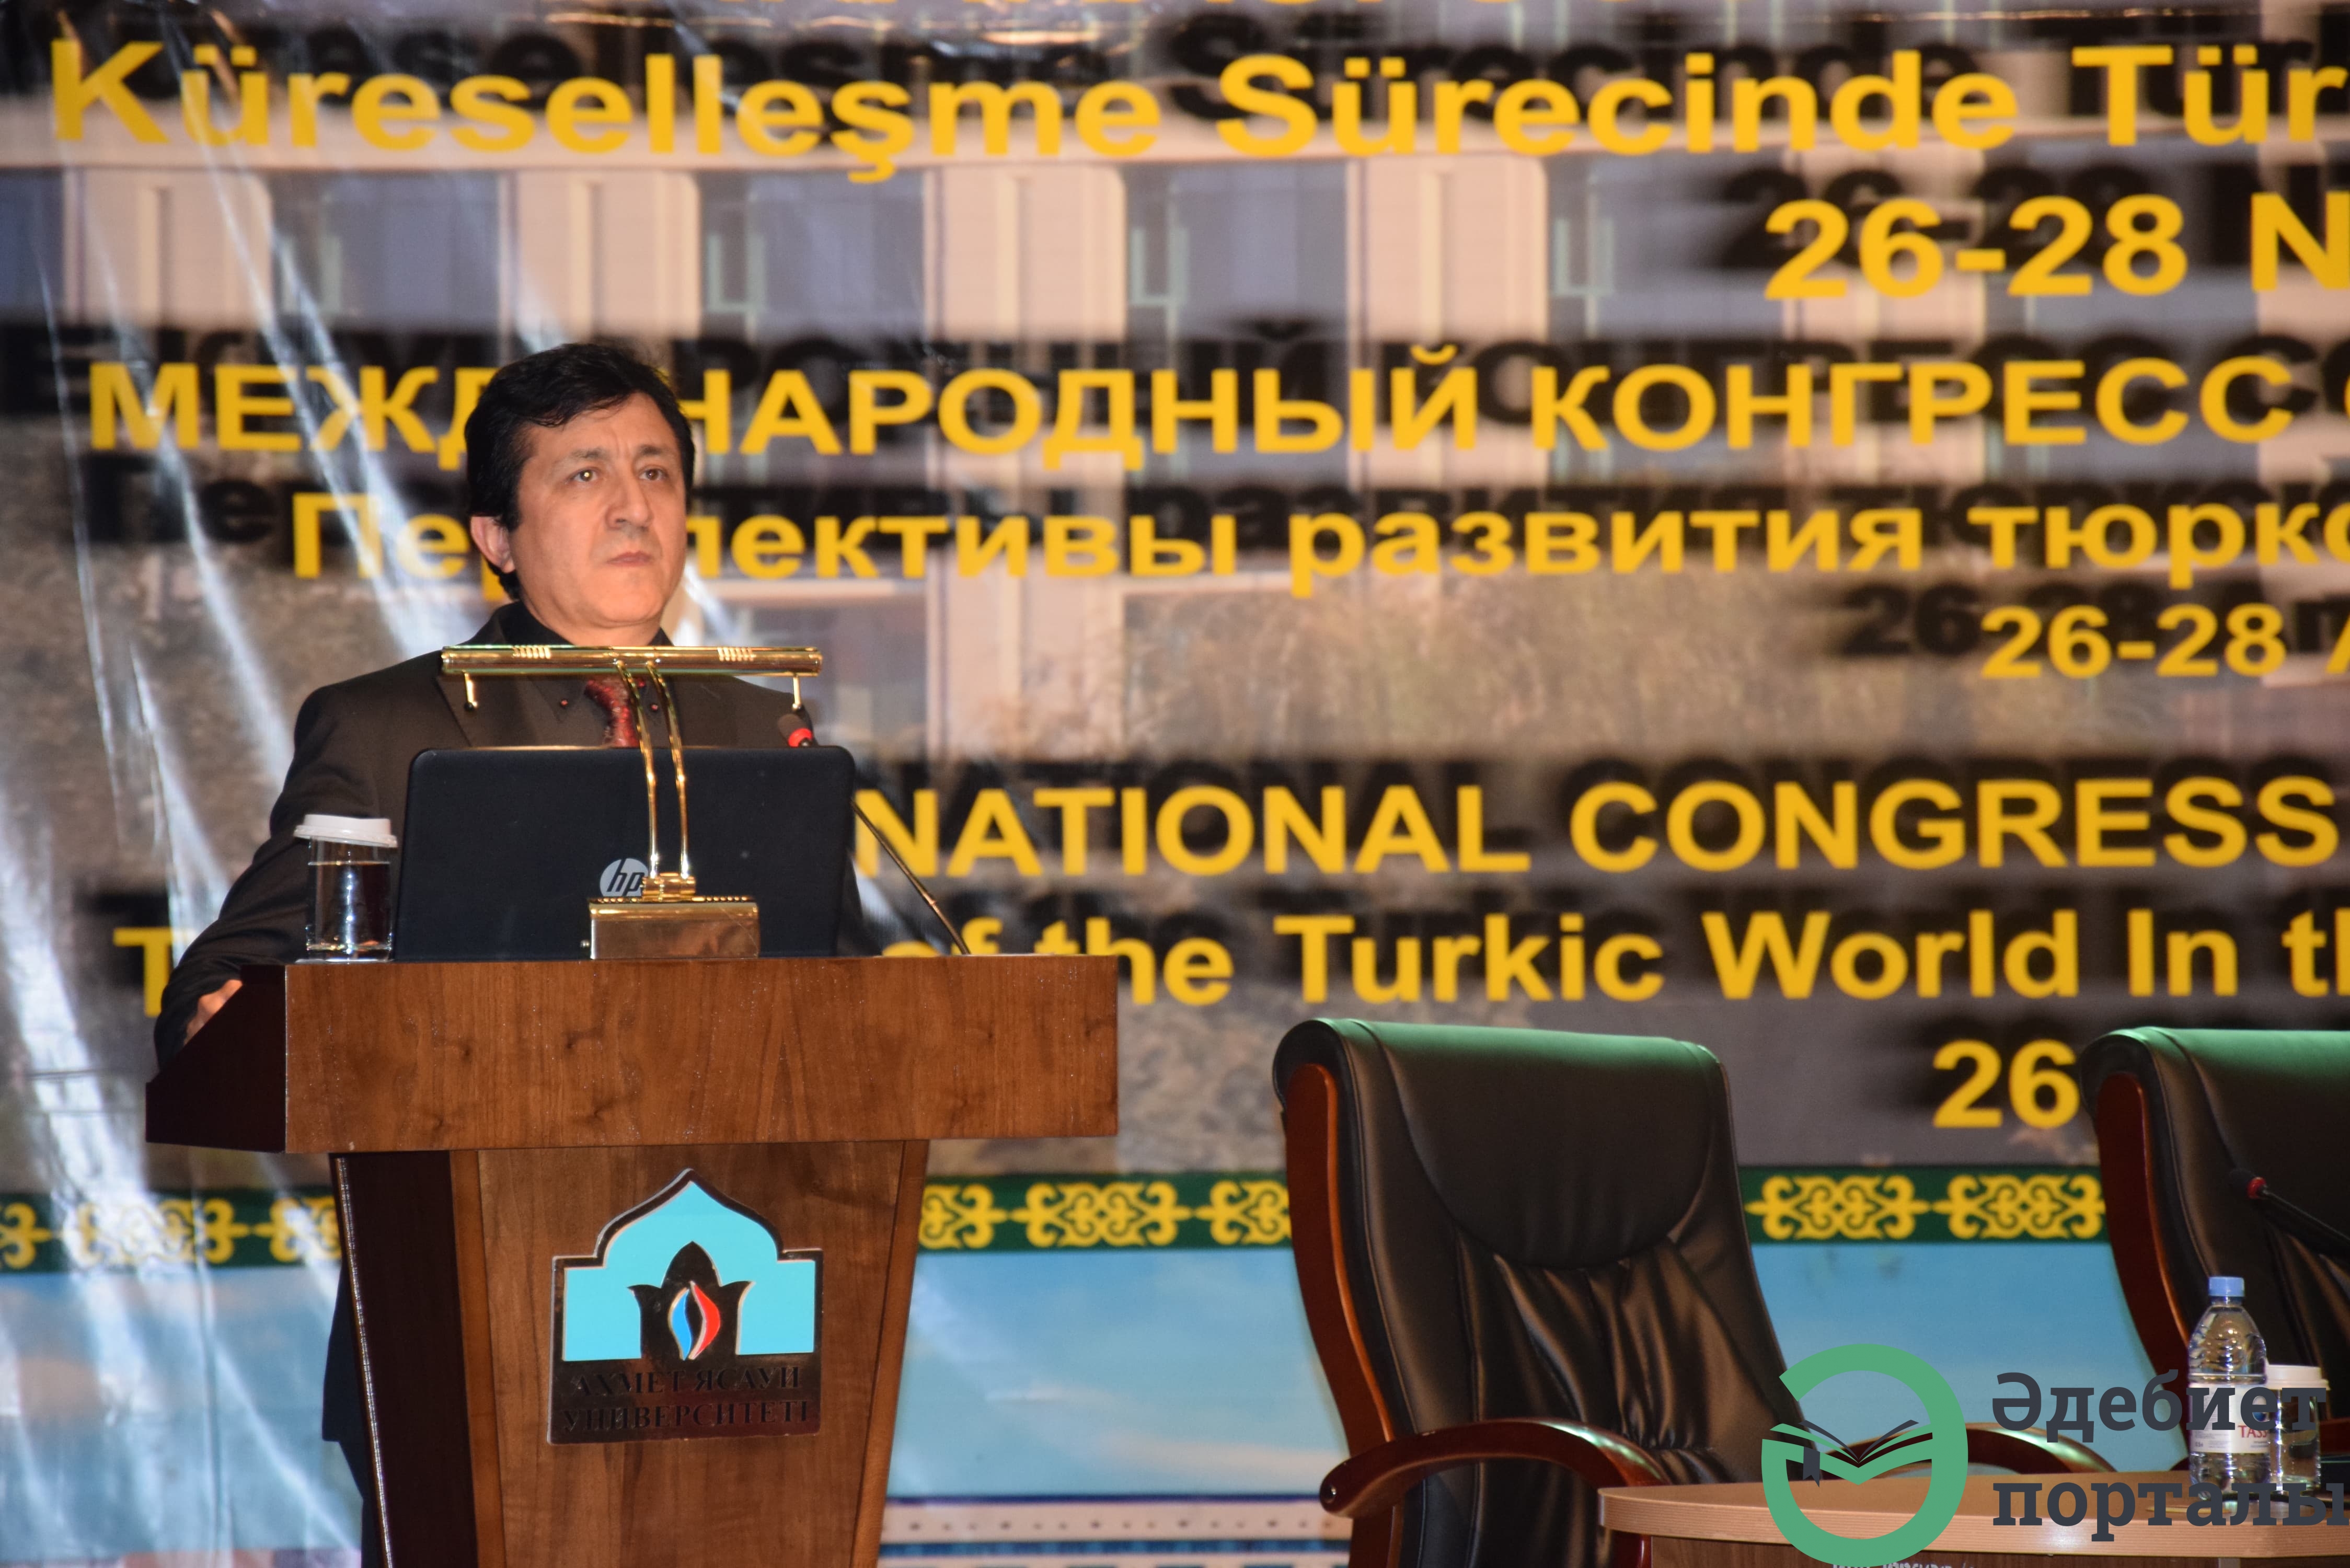 Халықаралық әлеуметтік ғылымдар конгресі: ІІІ Түркістан форумы  - фото 84 - adebiportal.kz